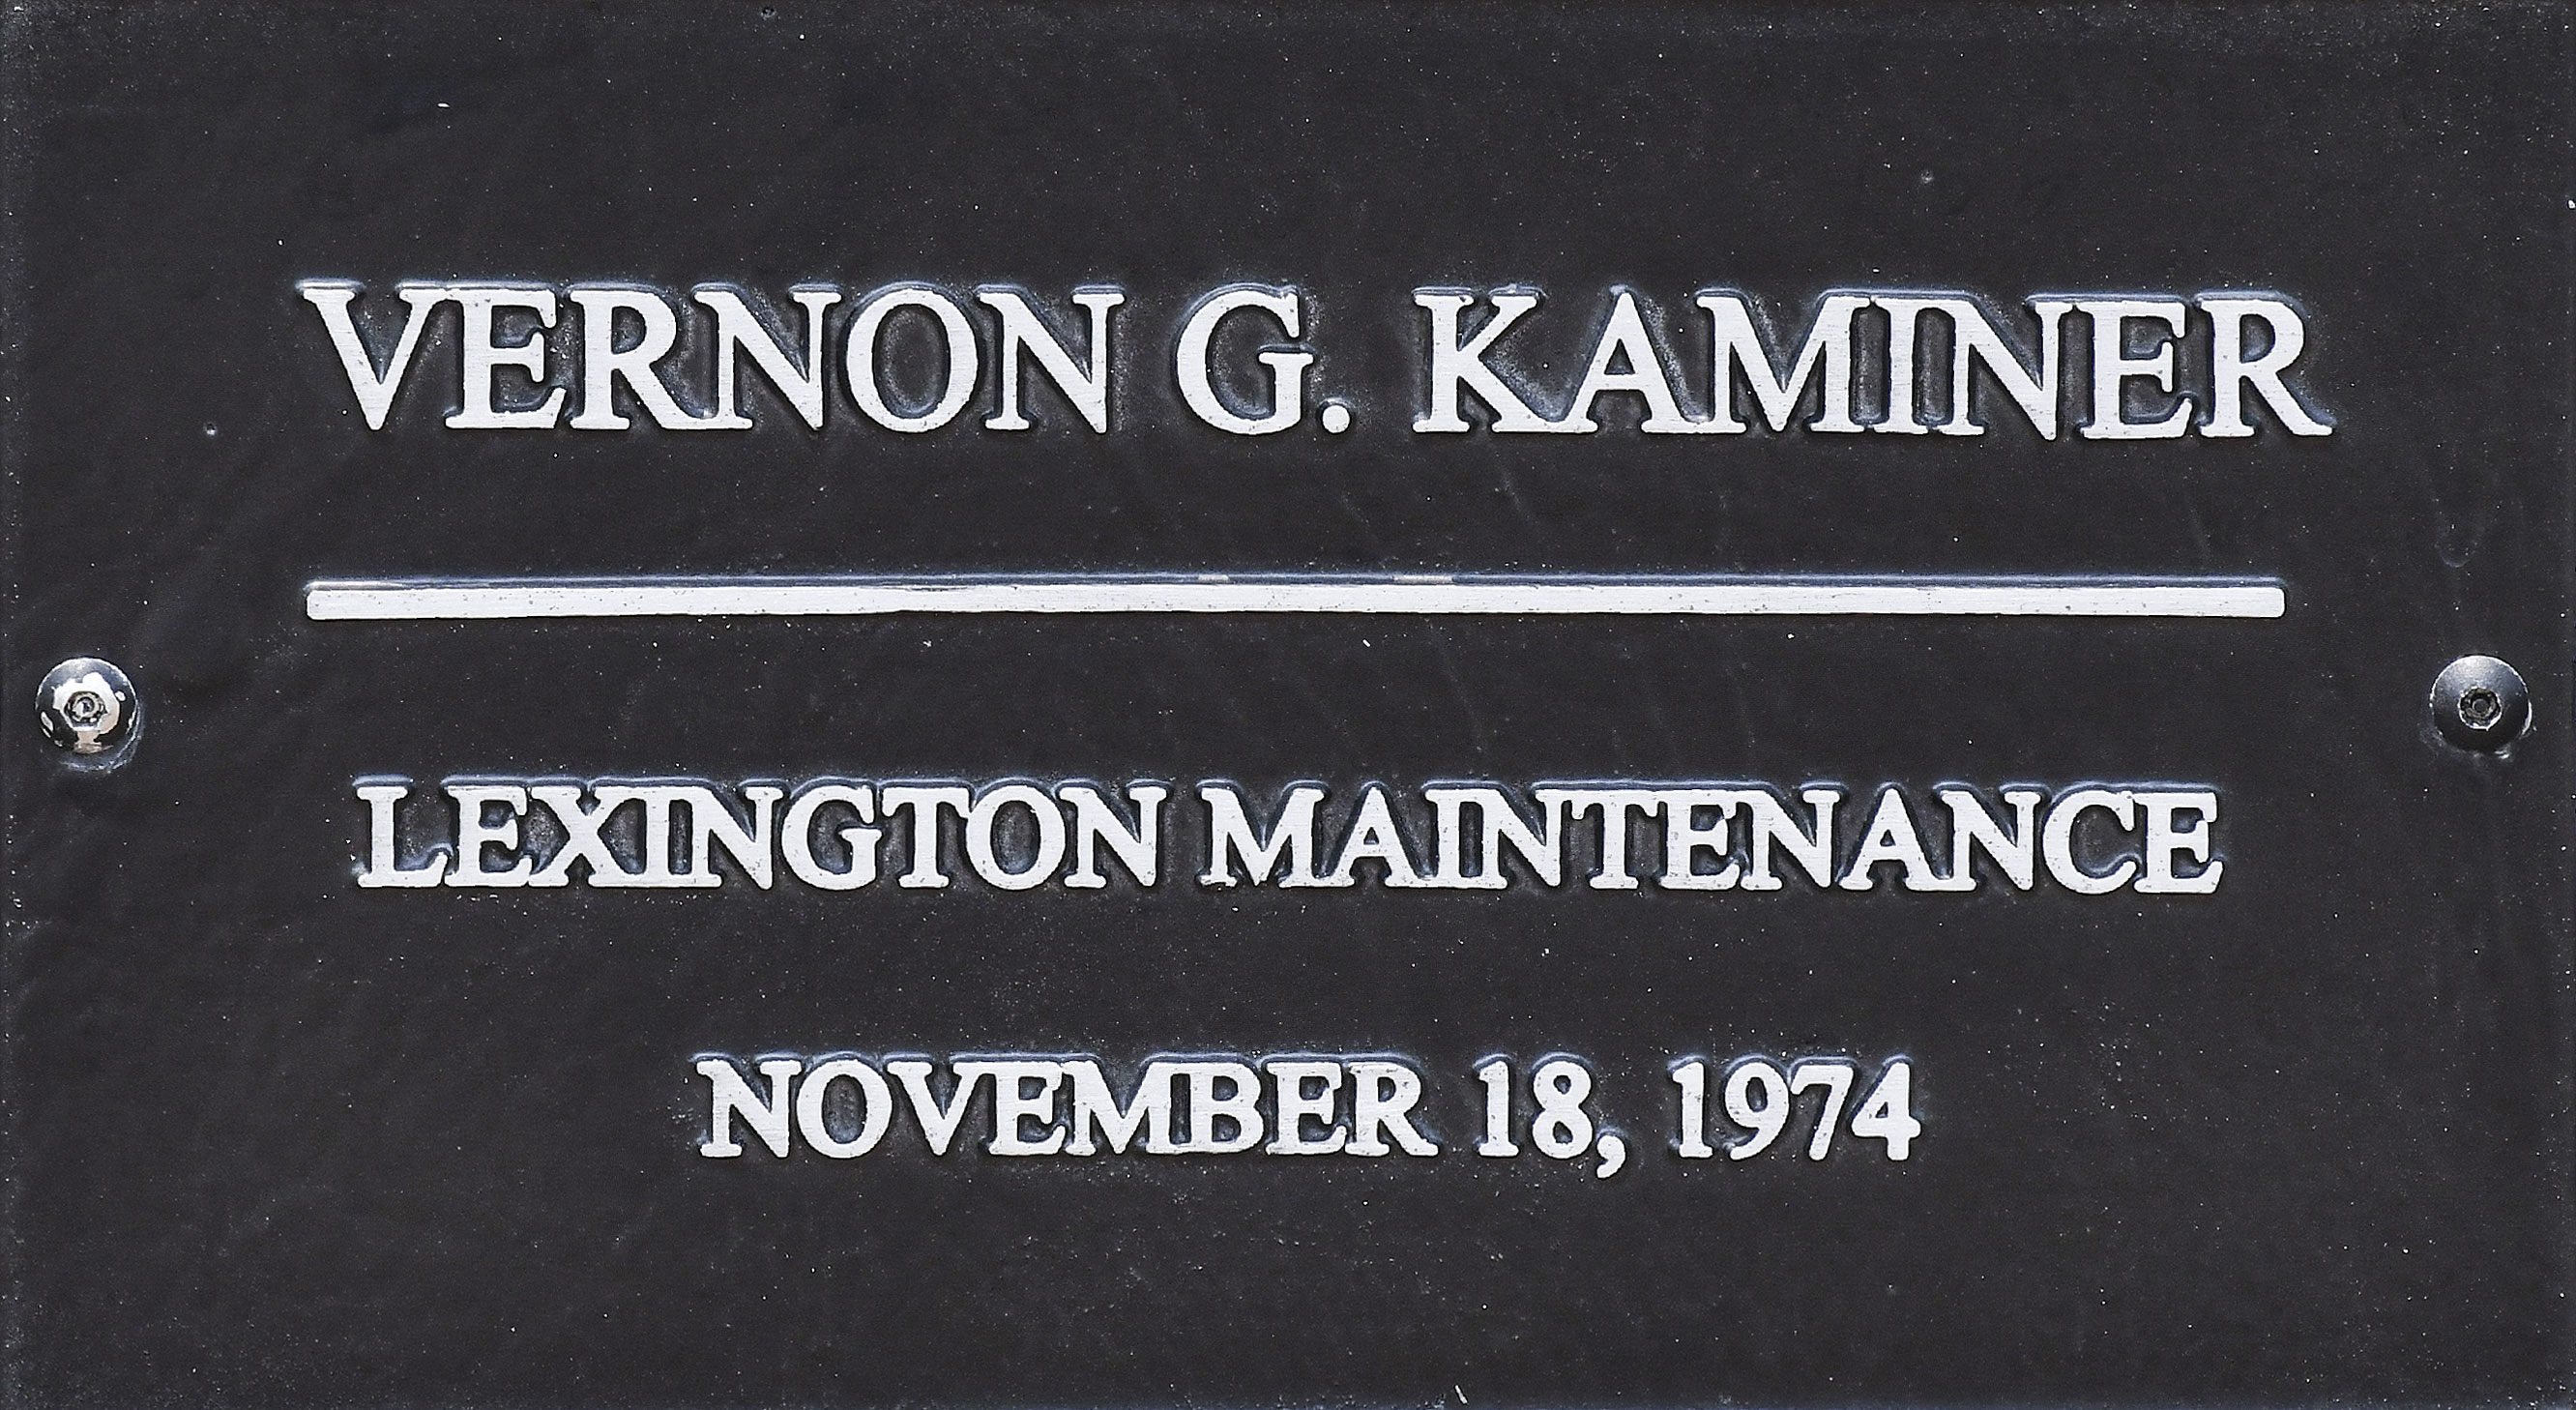 SCDOT Worker Vernon G. Kaminer  - Lexington Maintenance - November 18, 1974 